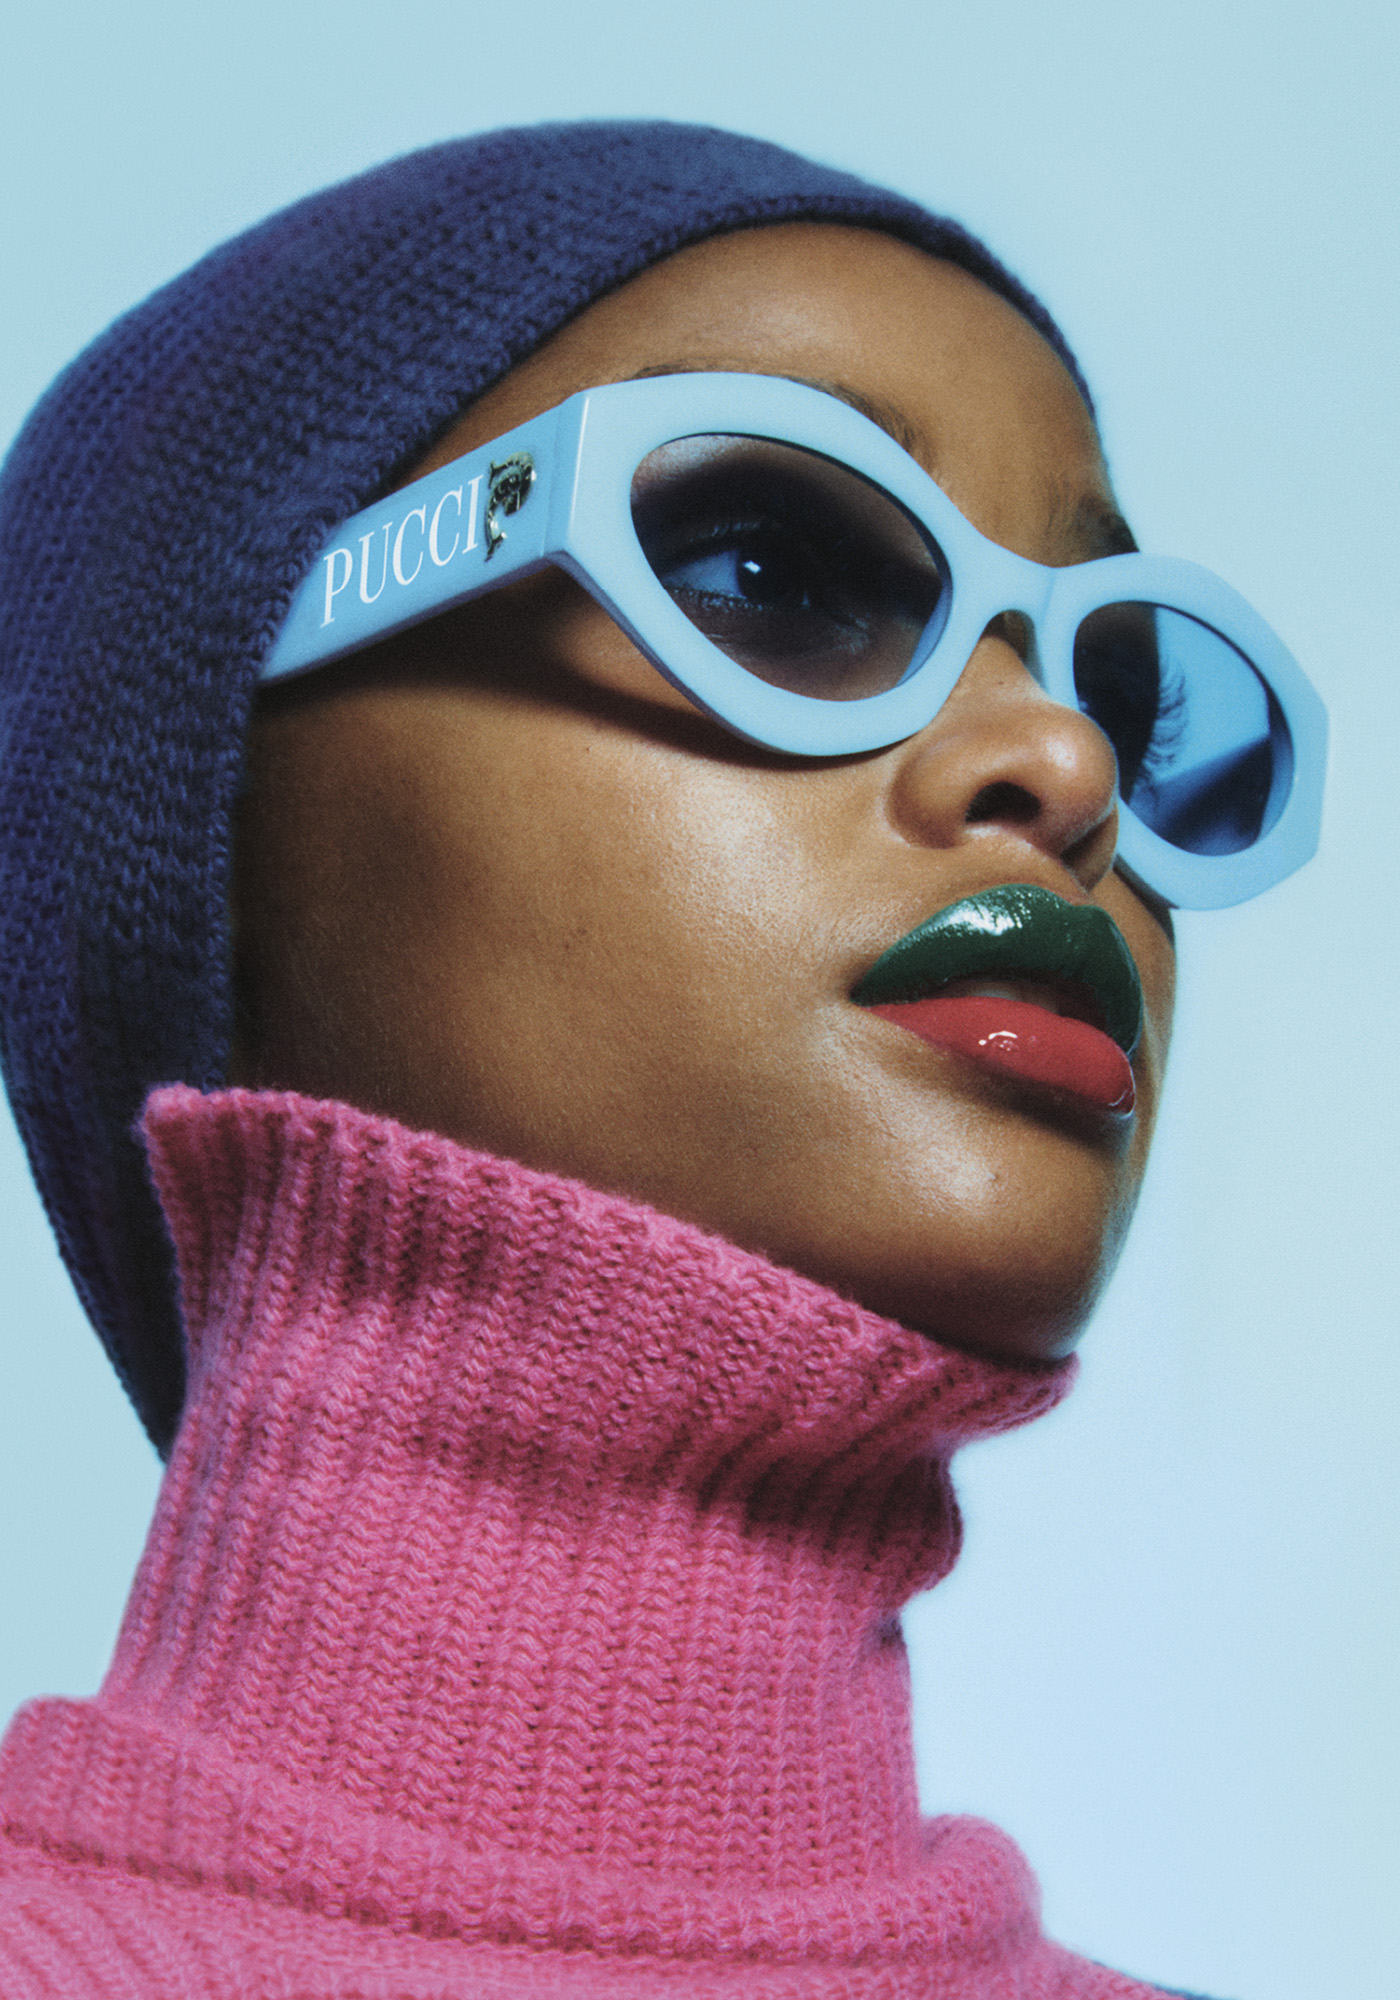 Pucci apresenta novos modelos de óculos assinados por Camille Miceli